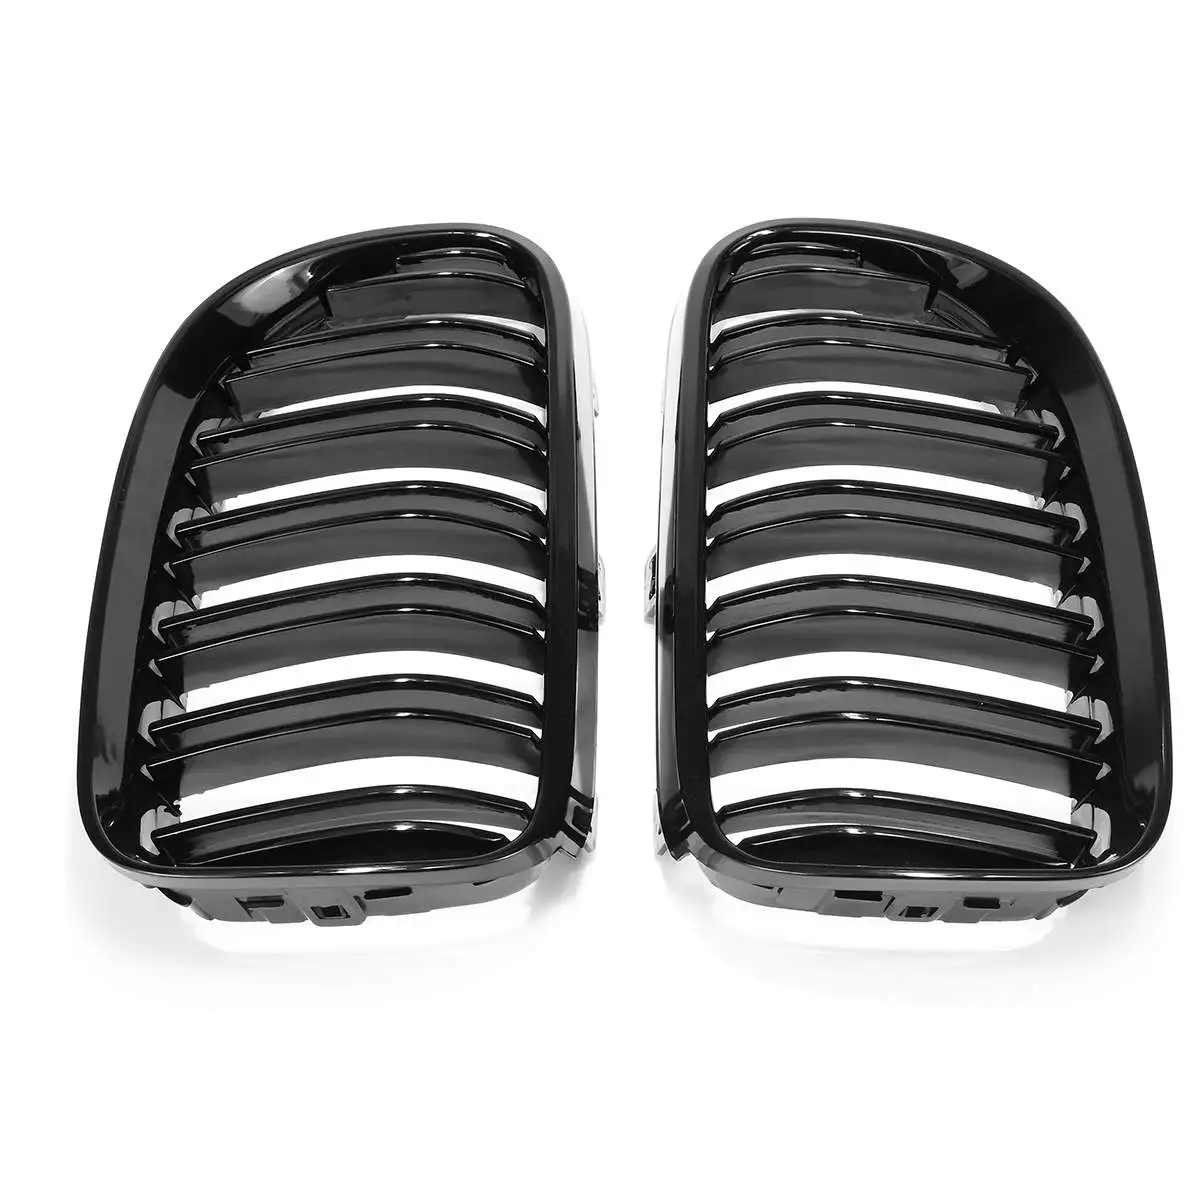 2 шт. глянцевая черная передняя решетка для почек двойные линии для BMW E92 E93 328i 335i 2010 2011 2012 2013 передние гоночные решетки